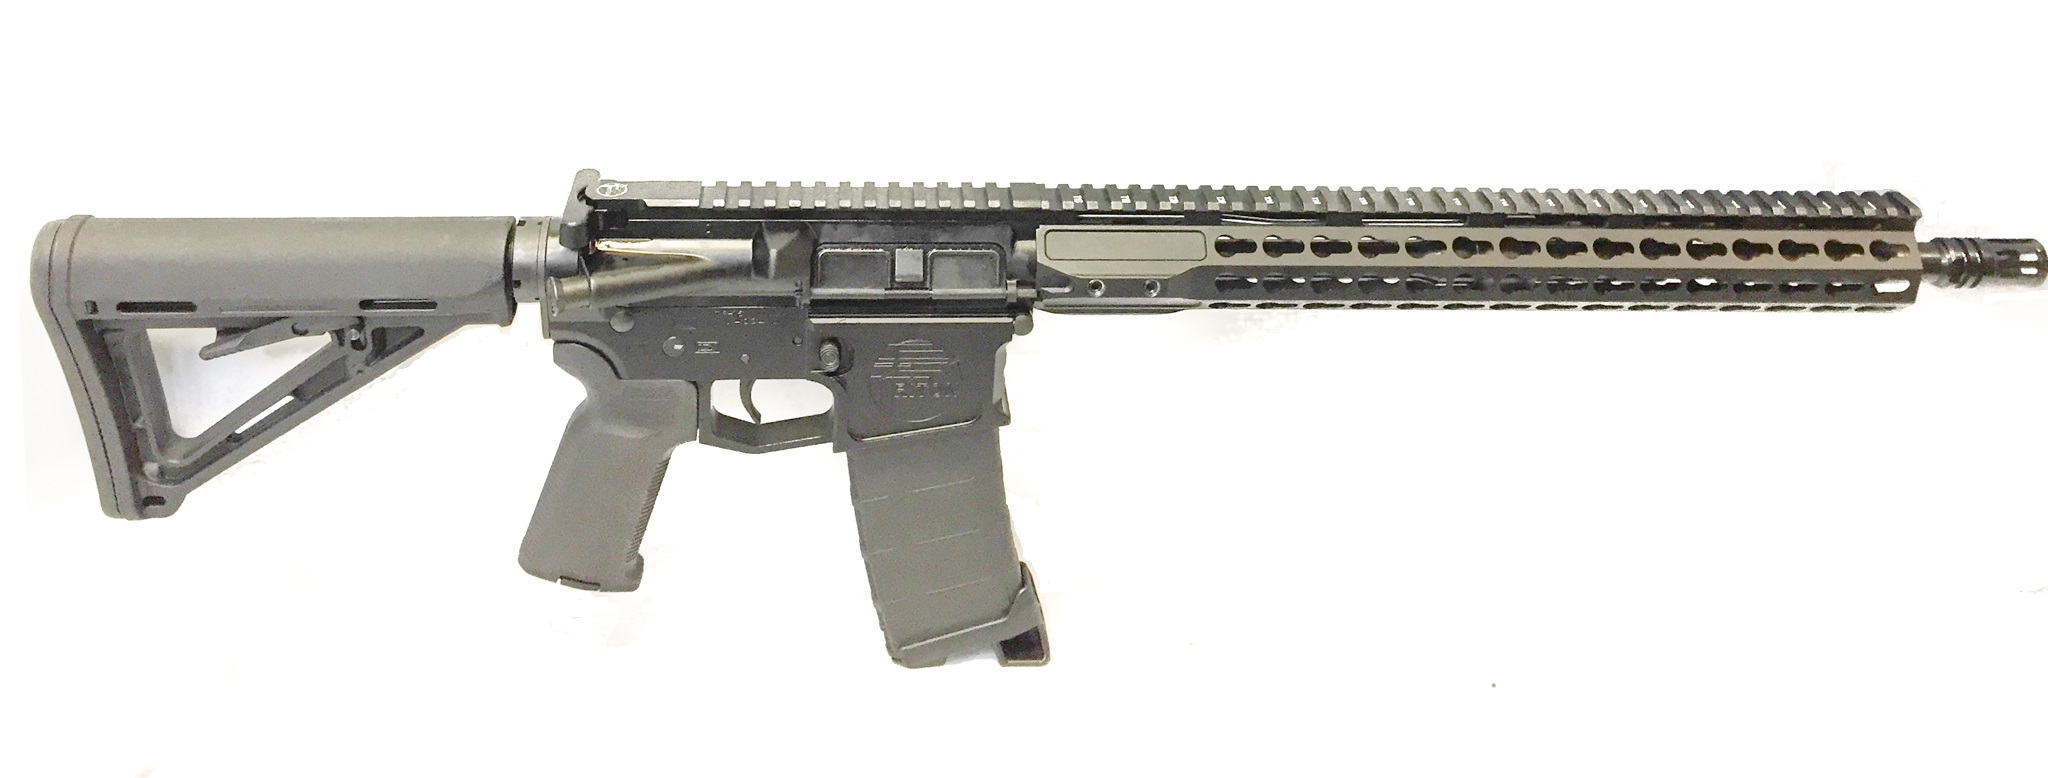 Triton M4 Match Keymod Rifle